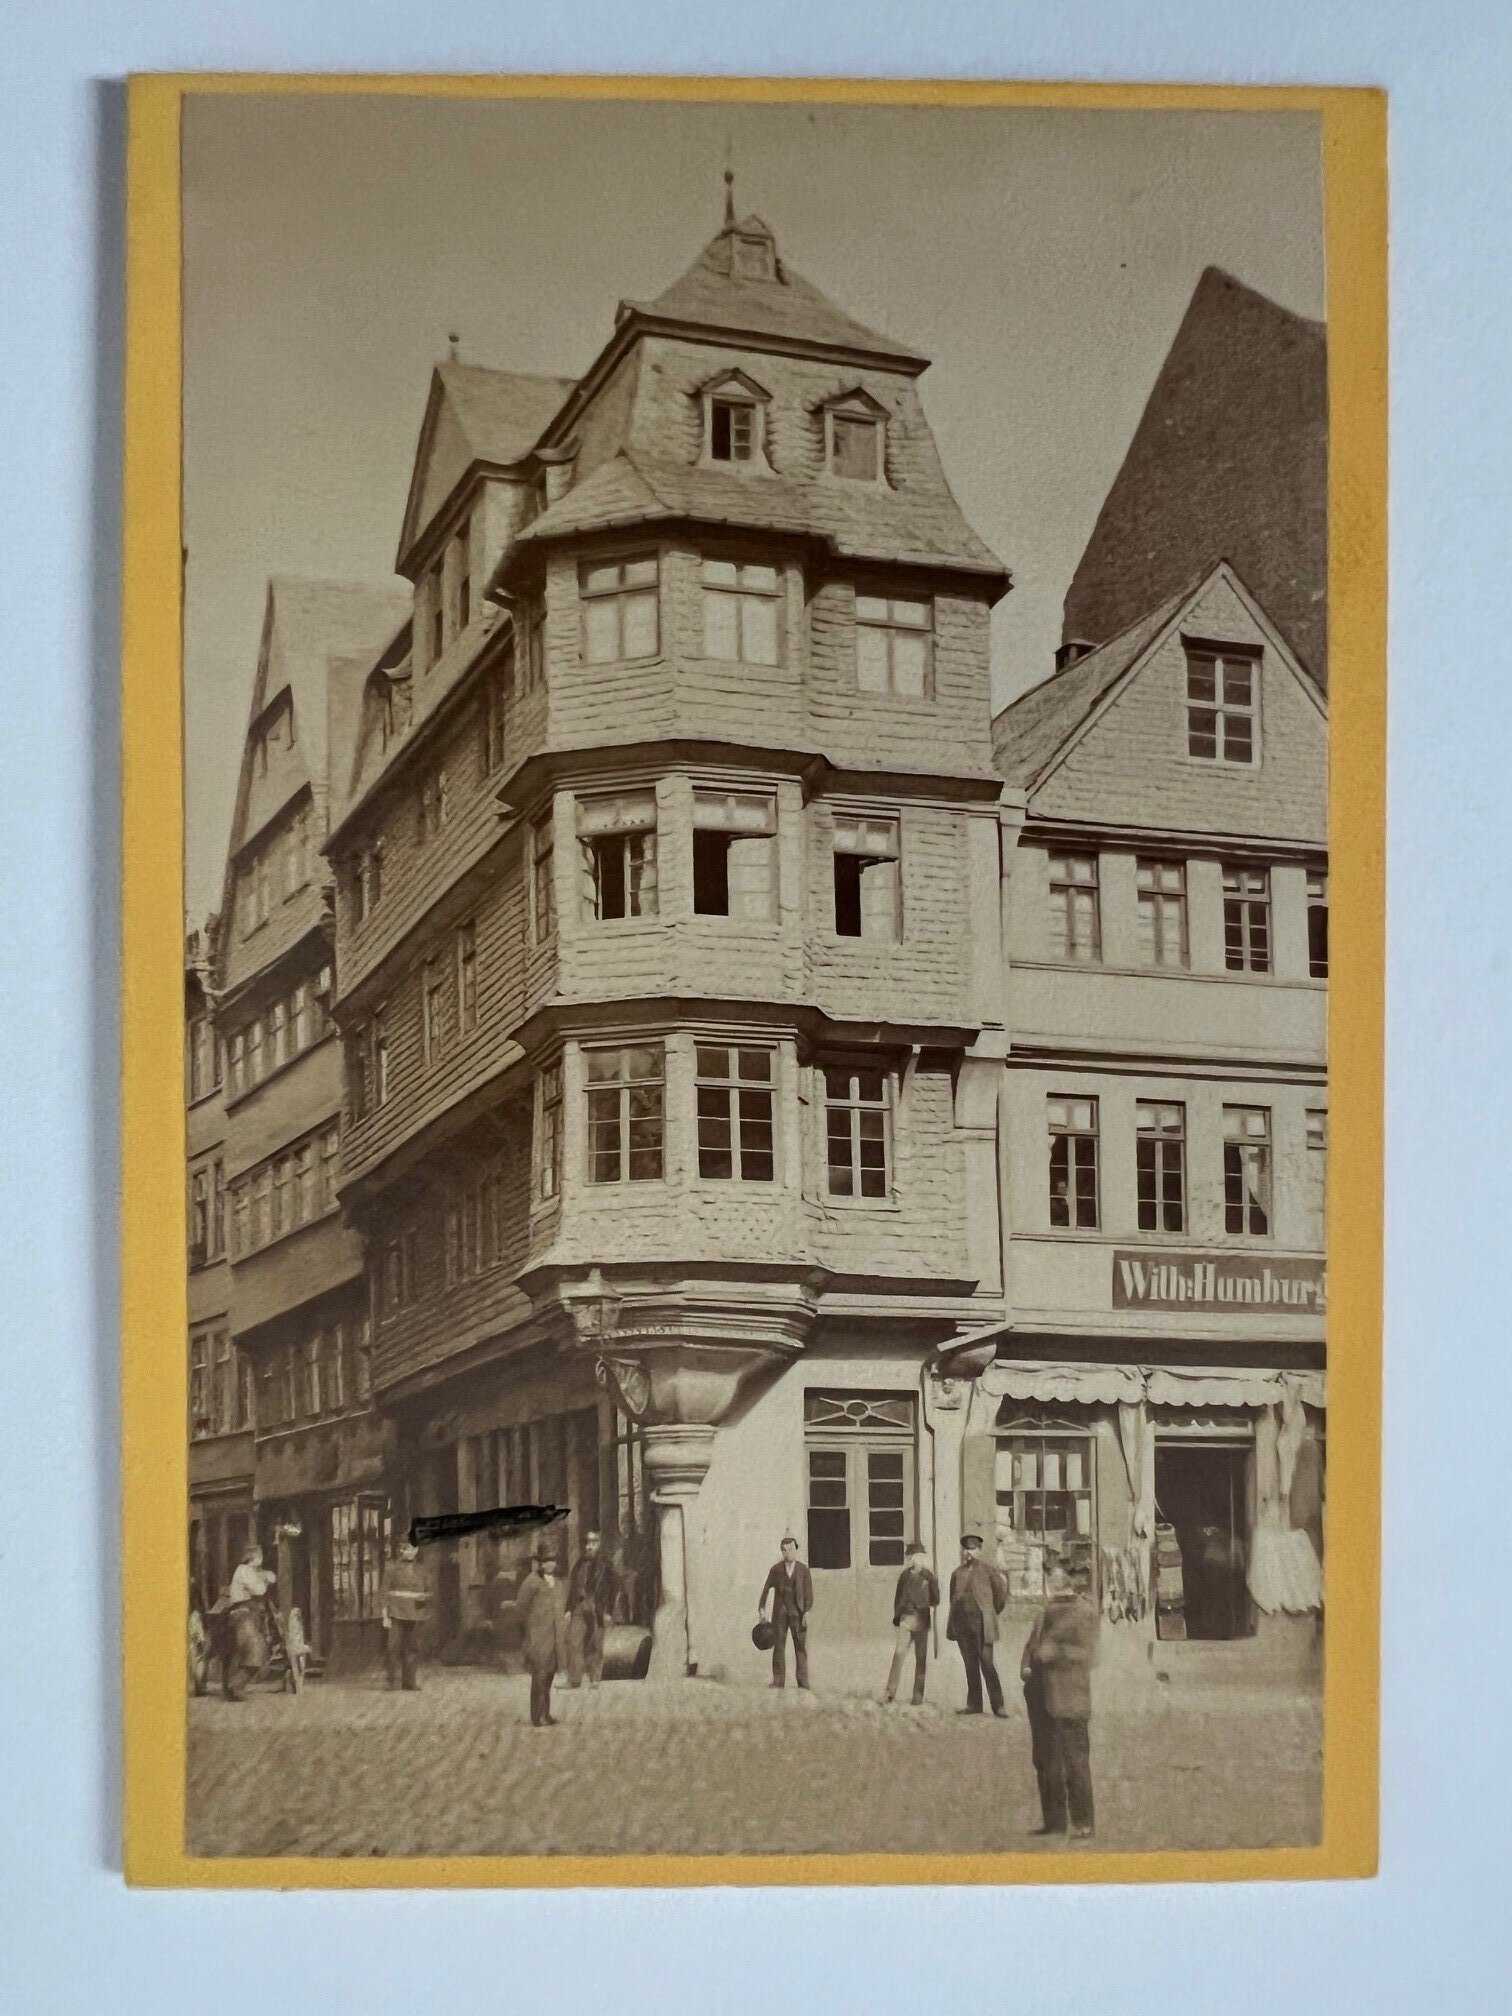 CdV, Unbekannter Fotograf, Frankfurt, Luther-Haus, ca. 1884. (Taunus-Rhein-Main - Regionalgeschichtliche Sammlung Dr. Stefan Naas CC BY-NC-SA)